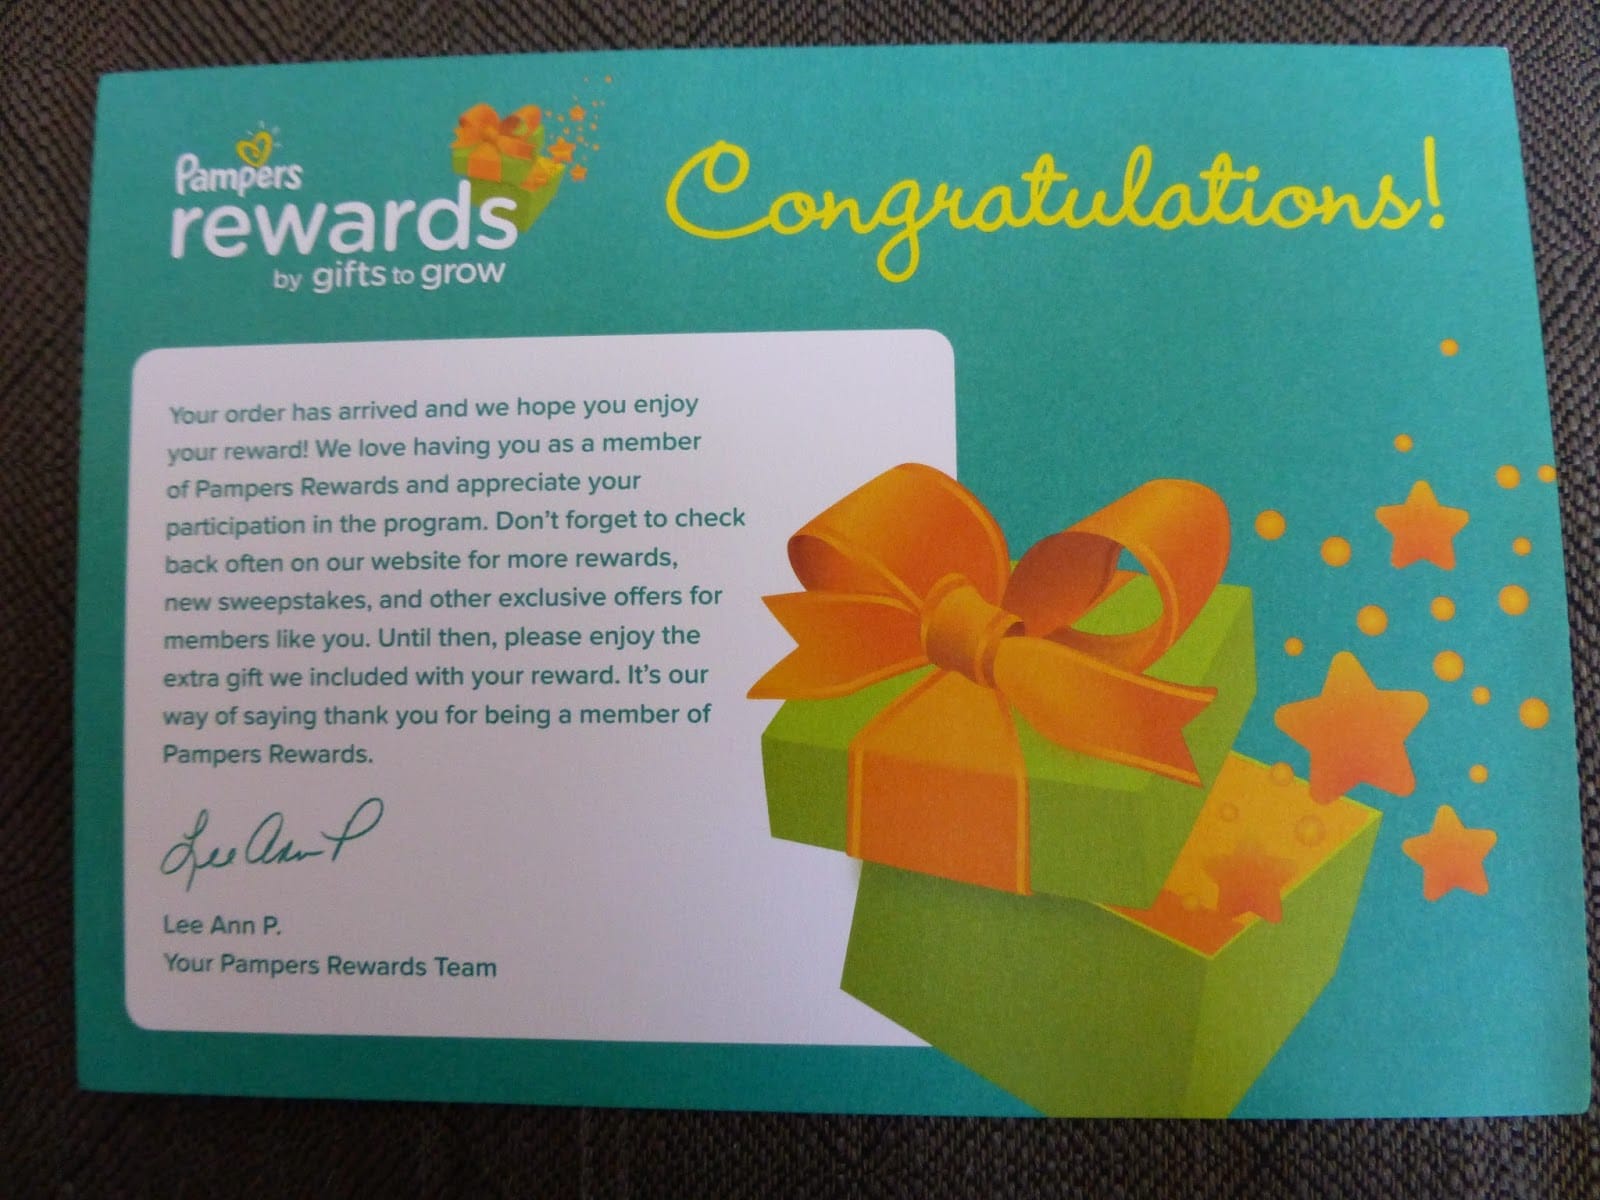 Pampers Rewards Program message